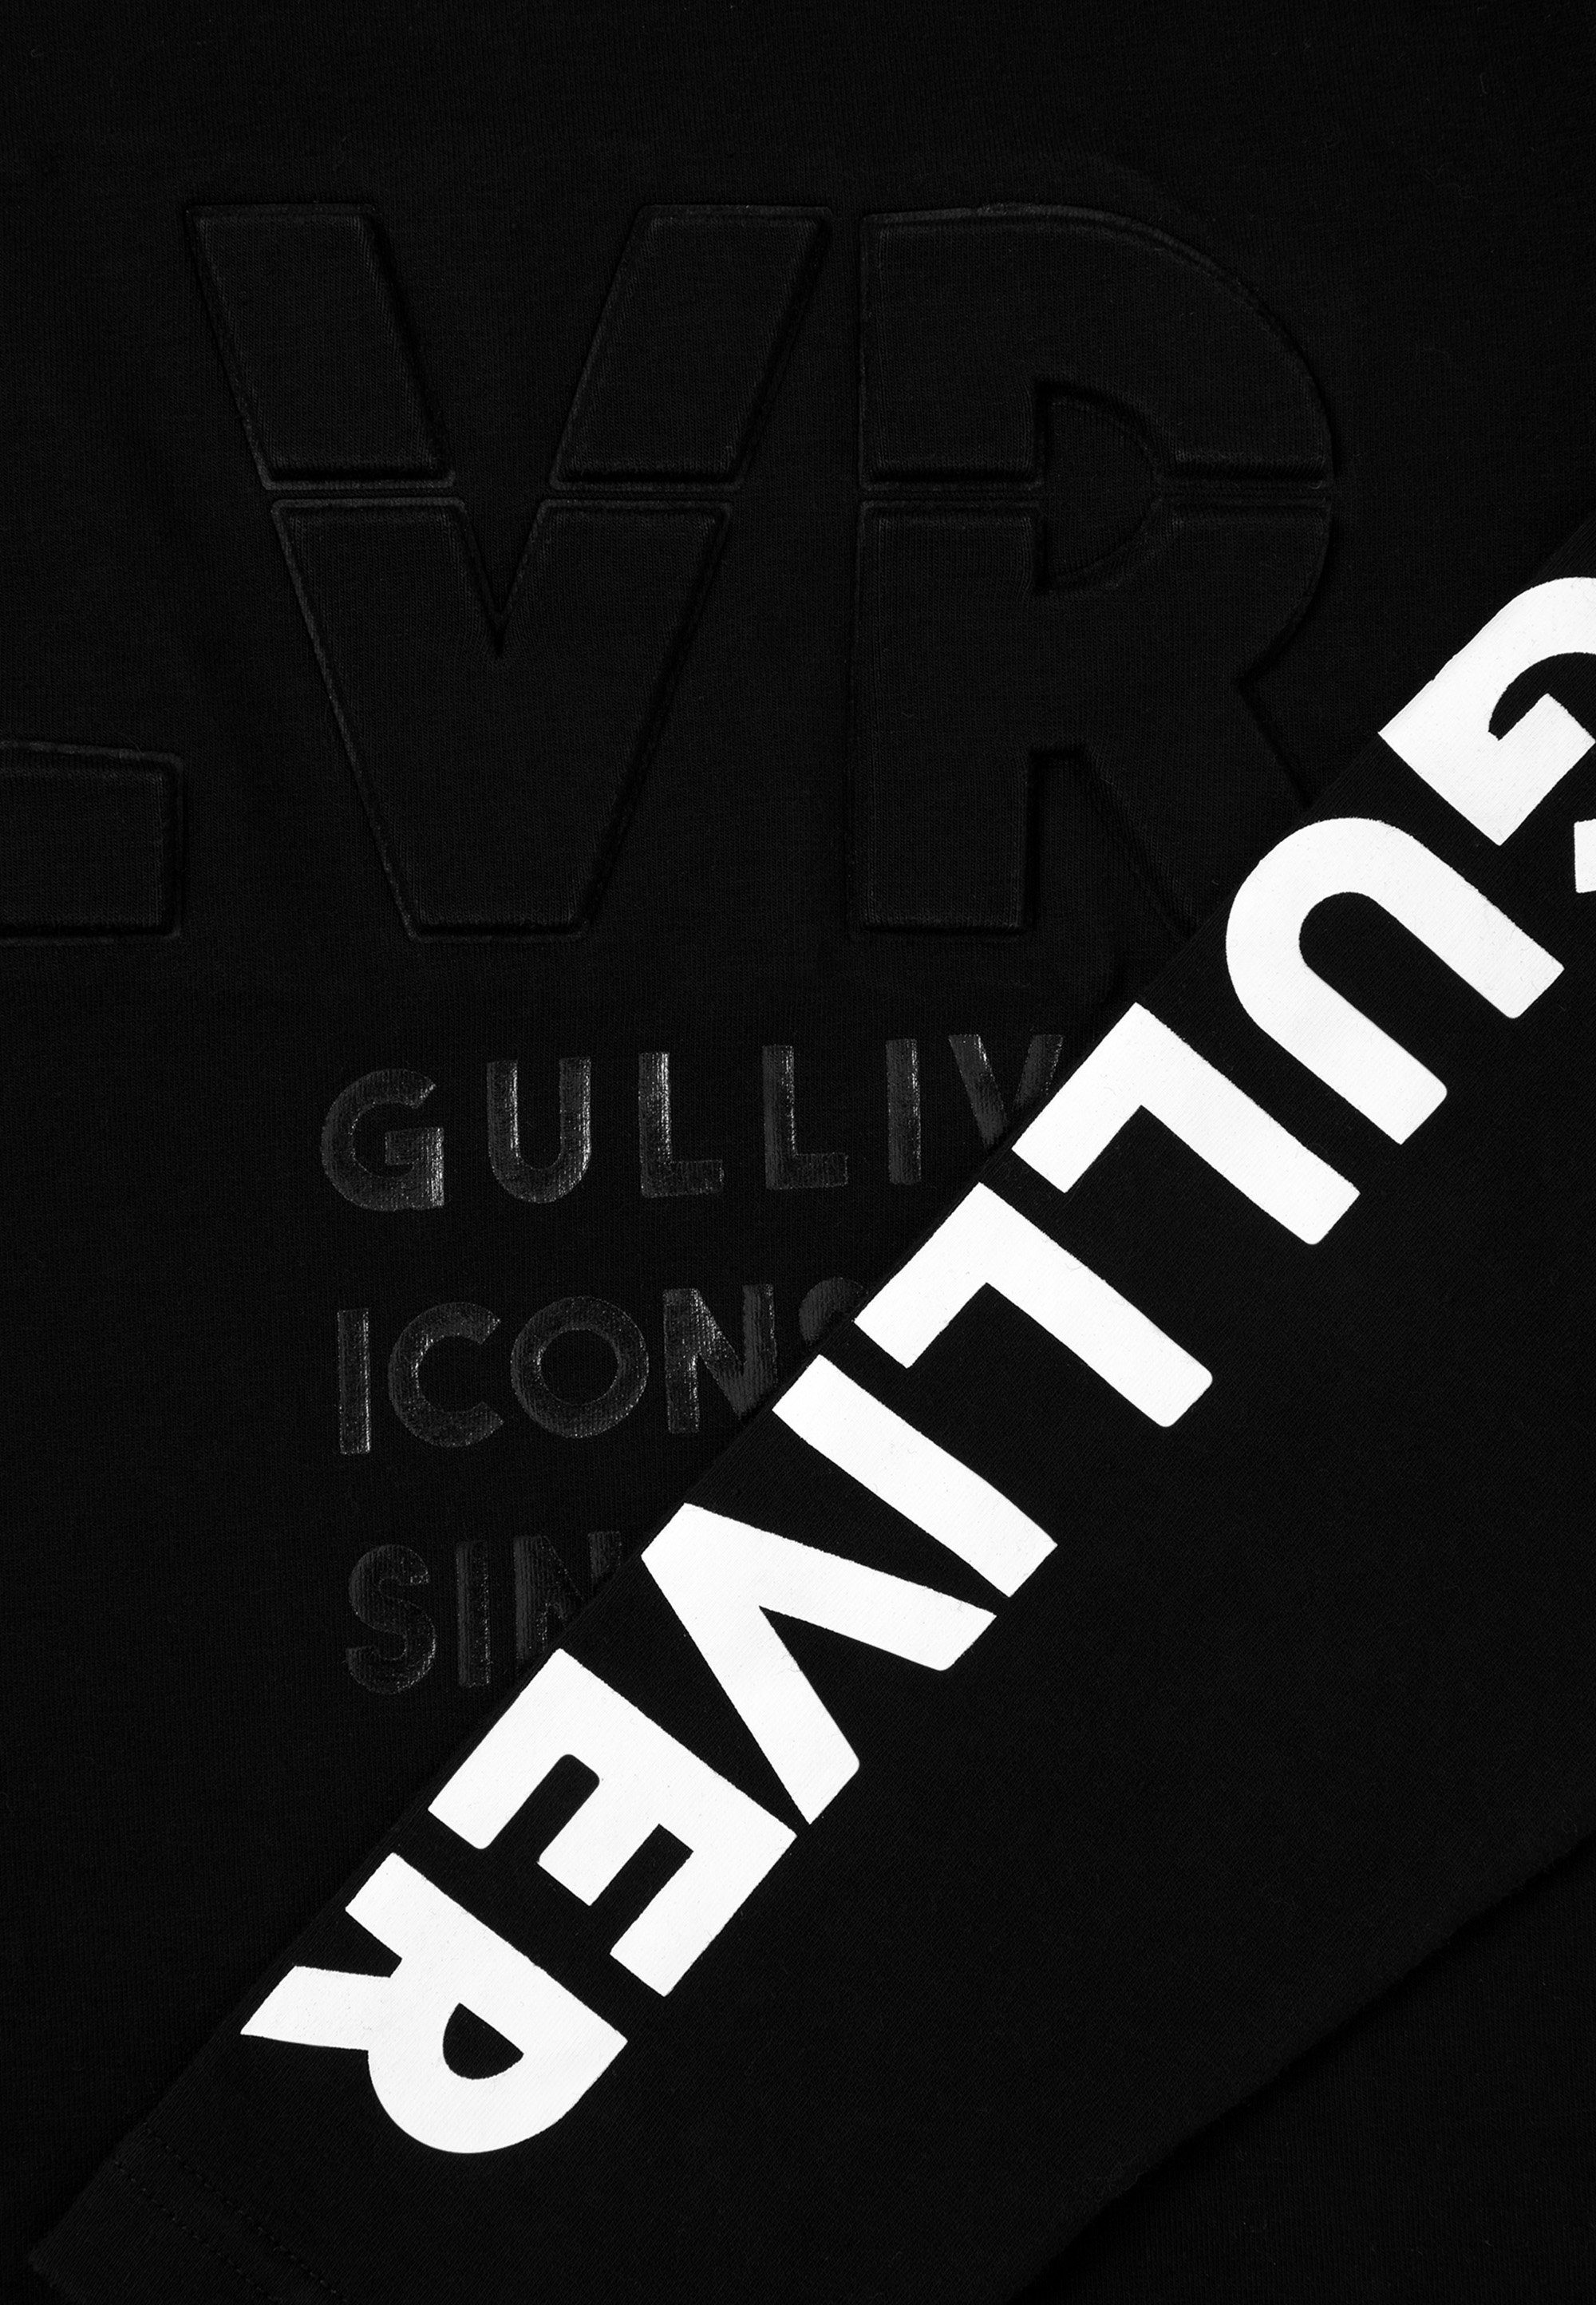 Gulliver Sweatshirt mit coolen Logoprints